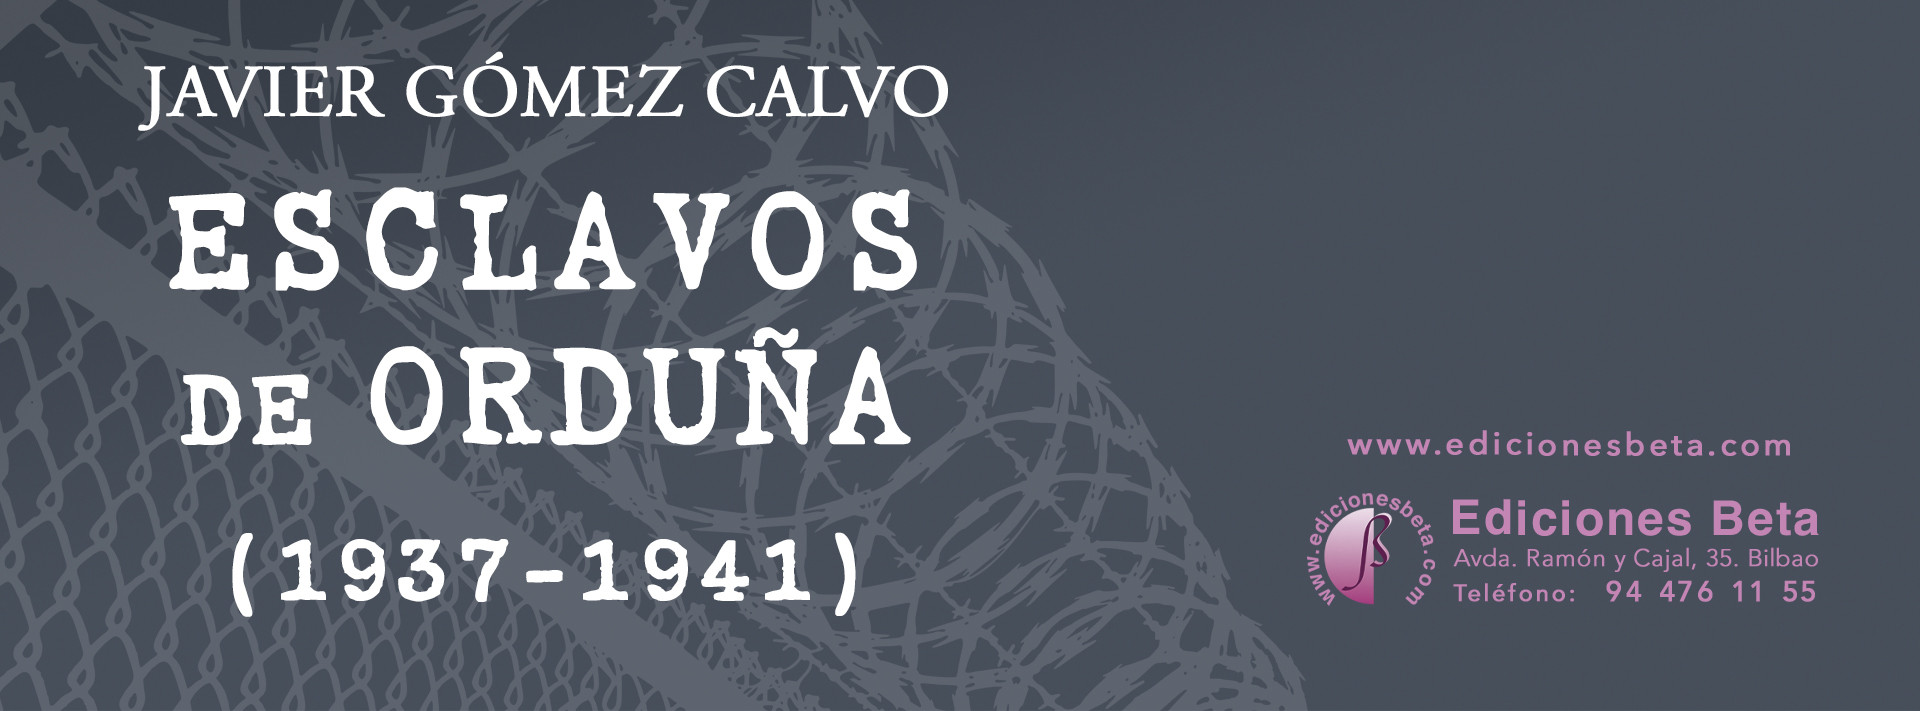 Esclavos de Orduña (1937-1941), de Javier Gómez Calvo